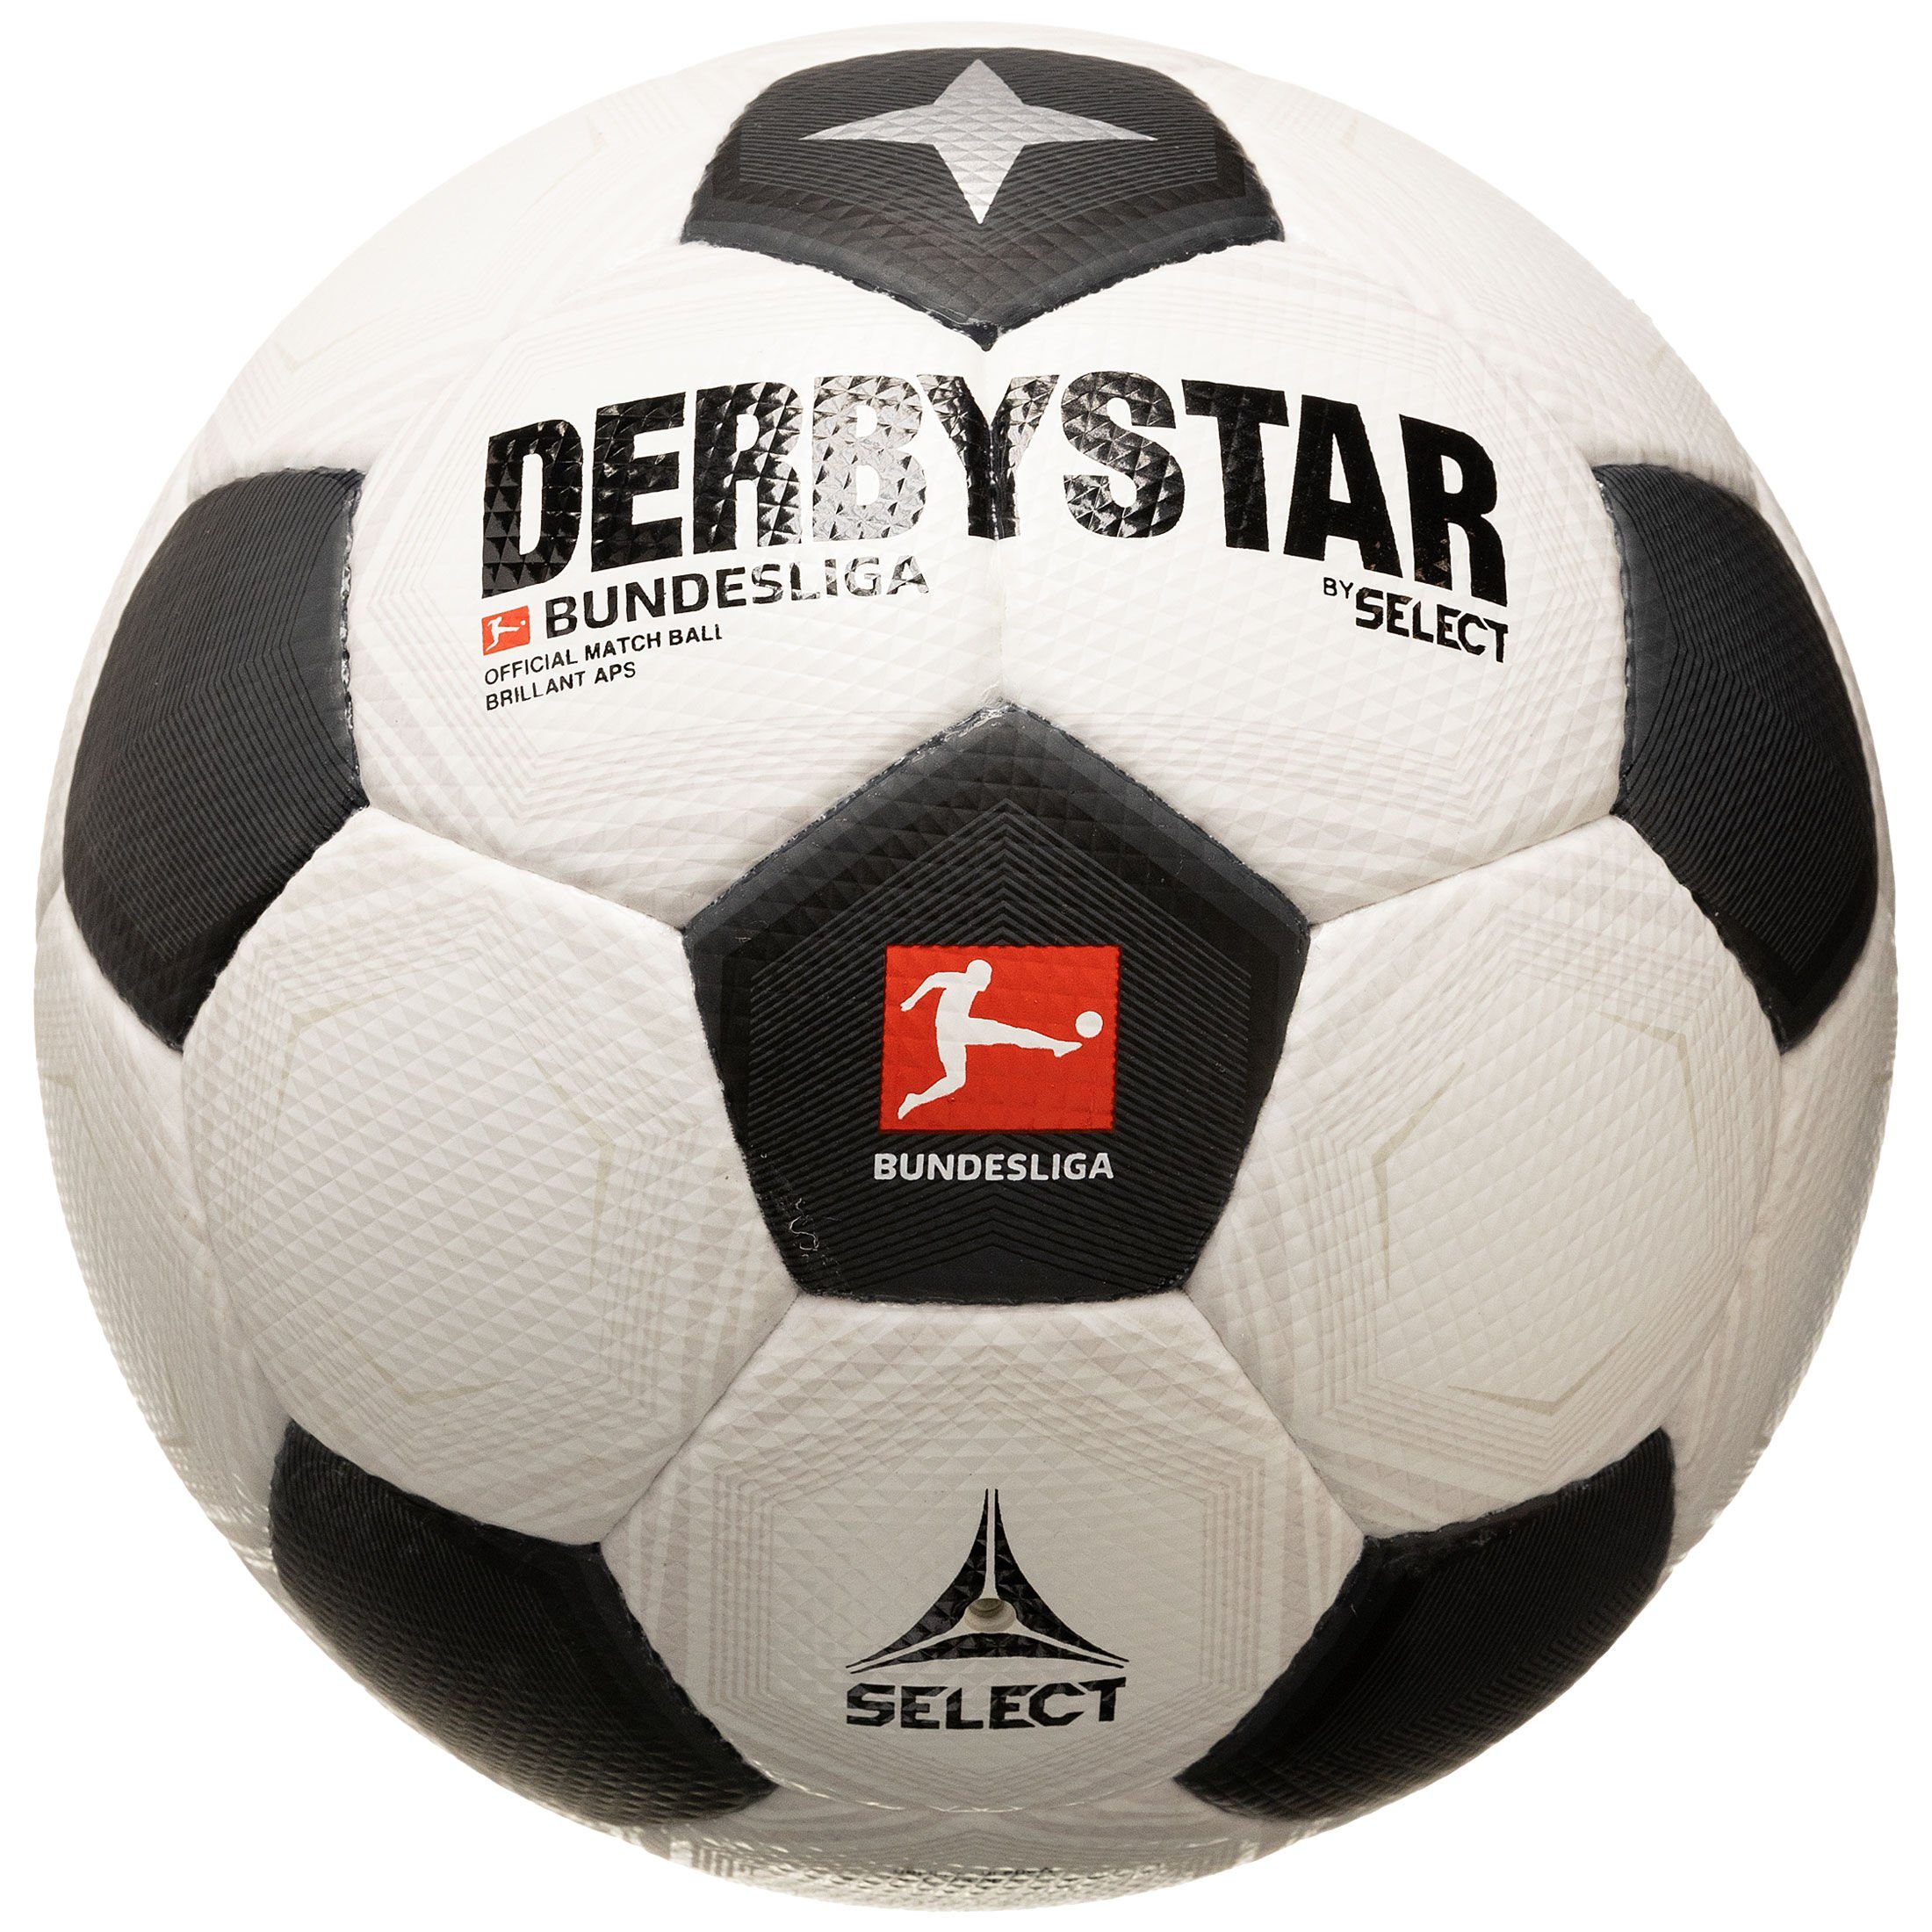 Derbystar Fußball Bundesliga Brillant Fußball v23 APS CLASSIC